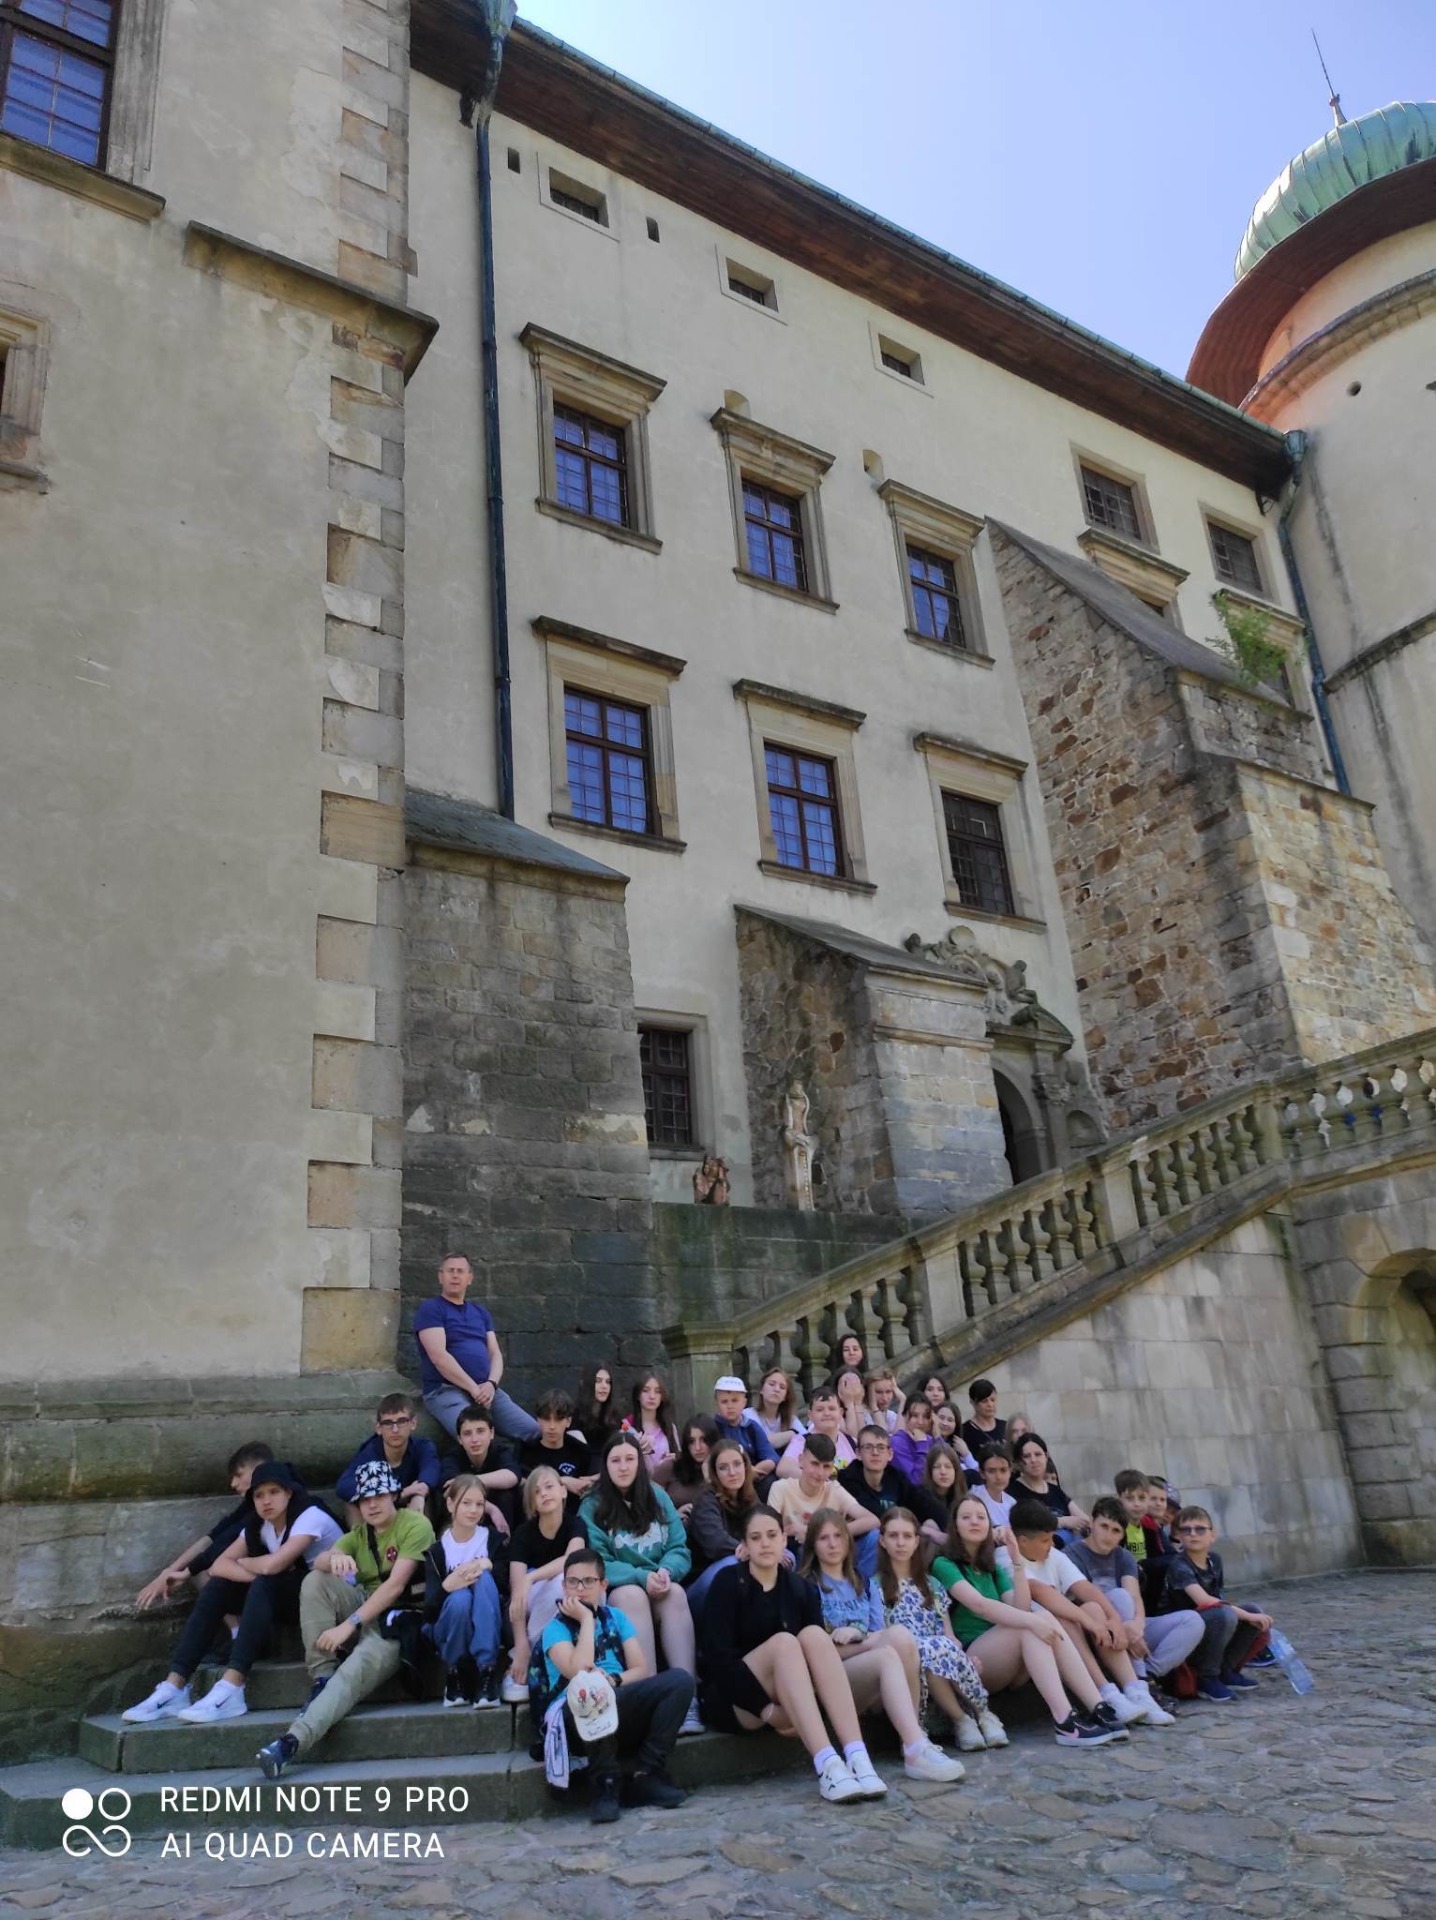 Zdjęcie przedstawia grupę uczniów i nauczycieli siedzących na schodach na zewnątrz zamku w Wiśniczu.